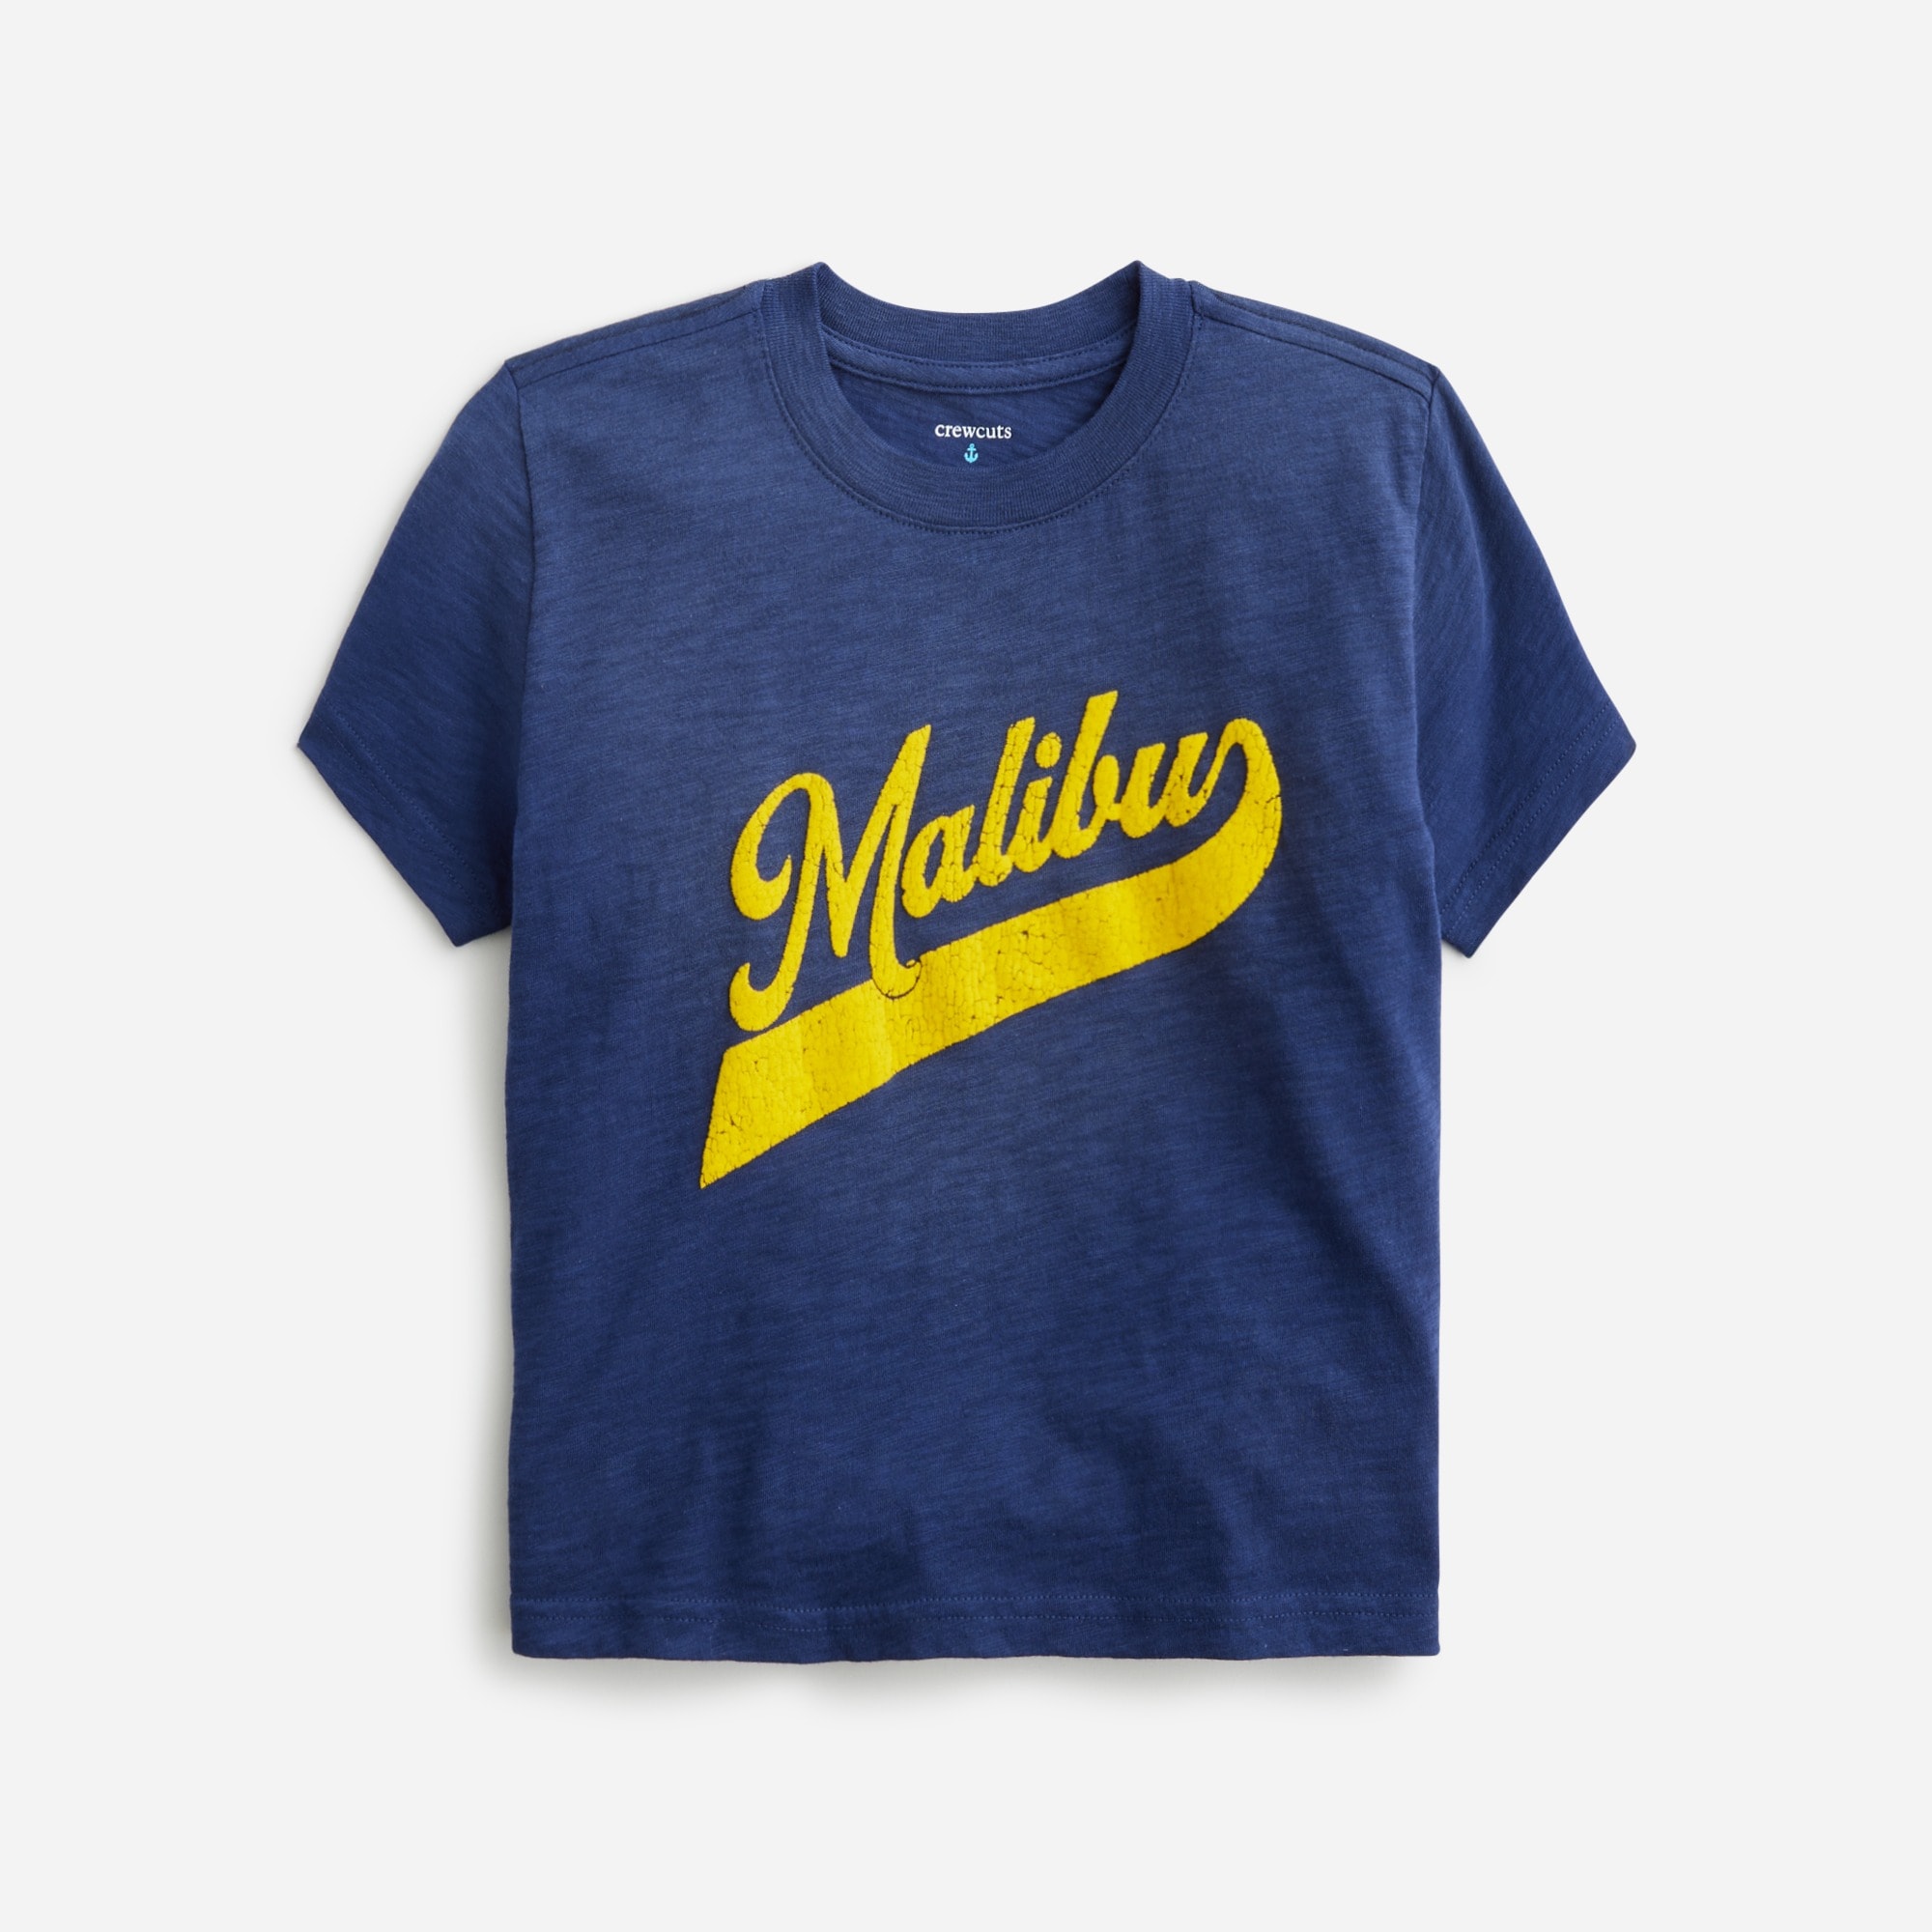  Kids' Malibu graphic T-shirt